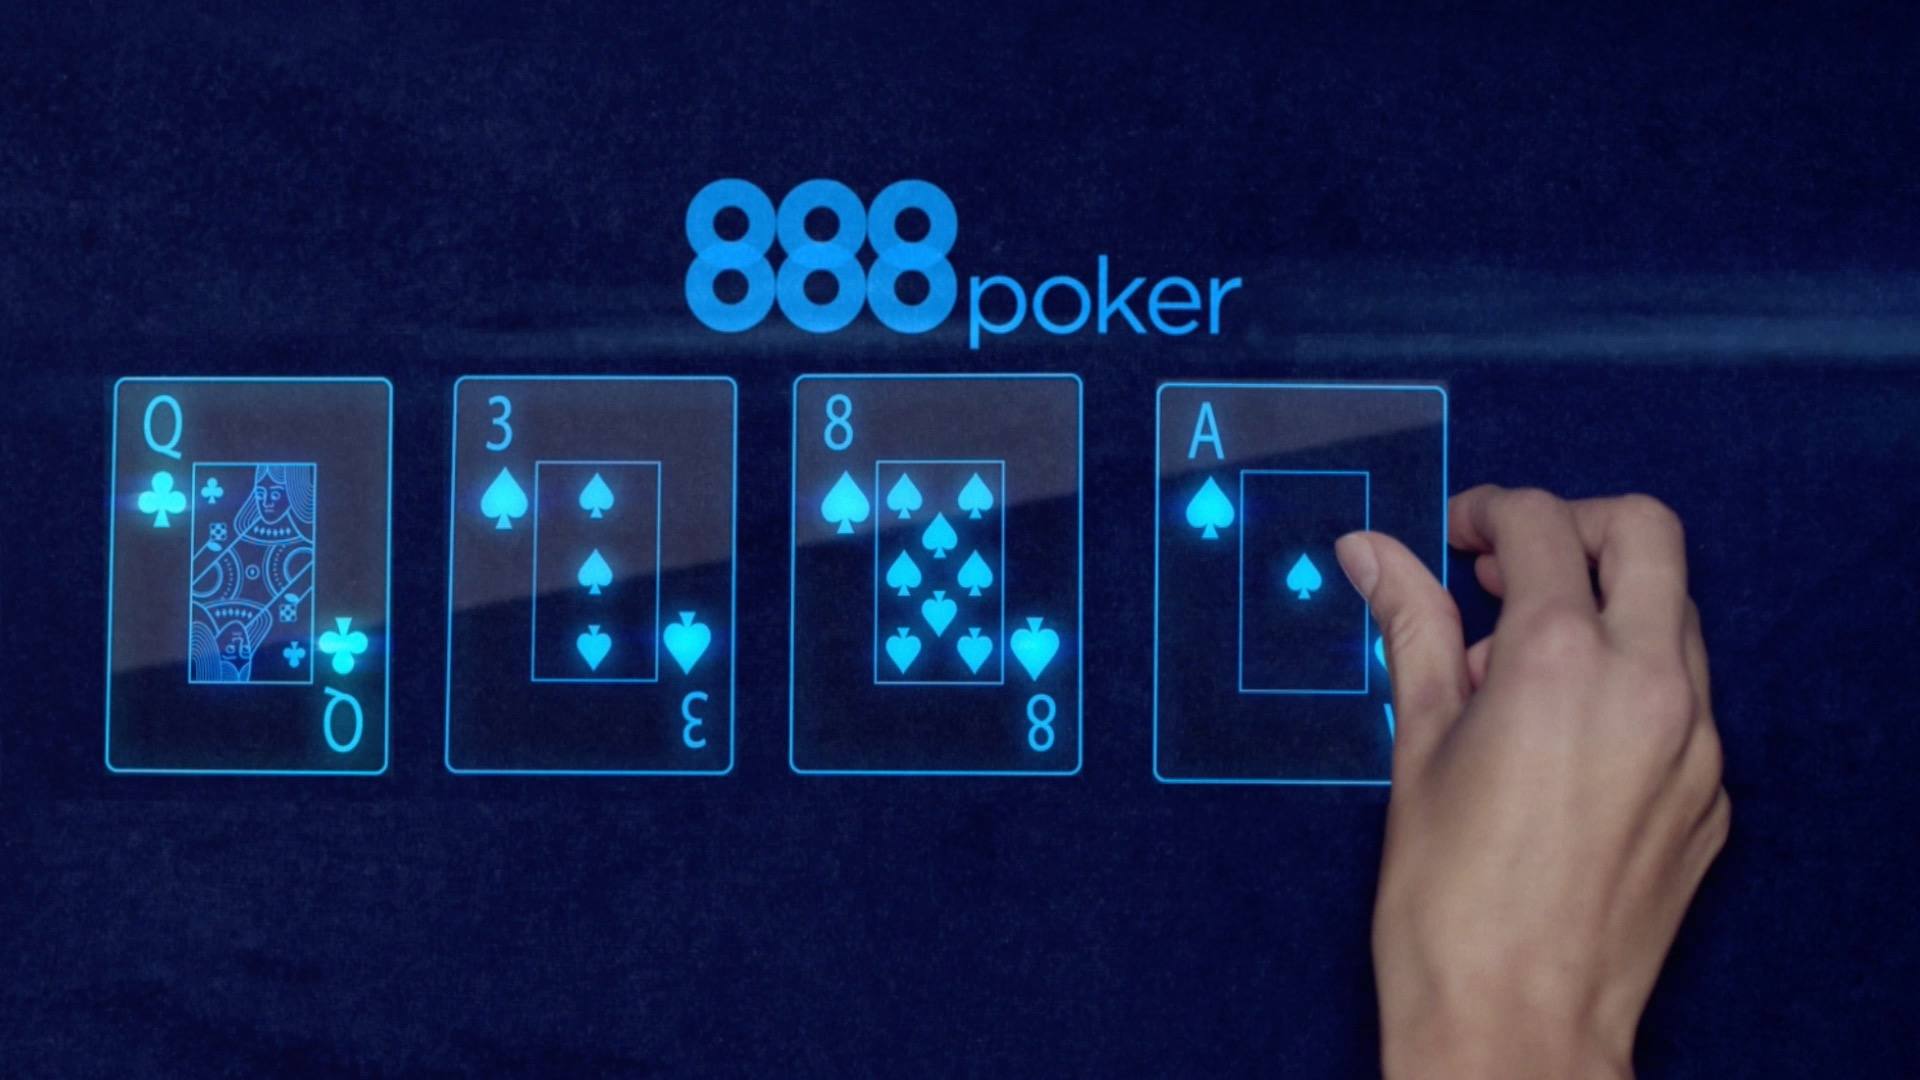   888poker